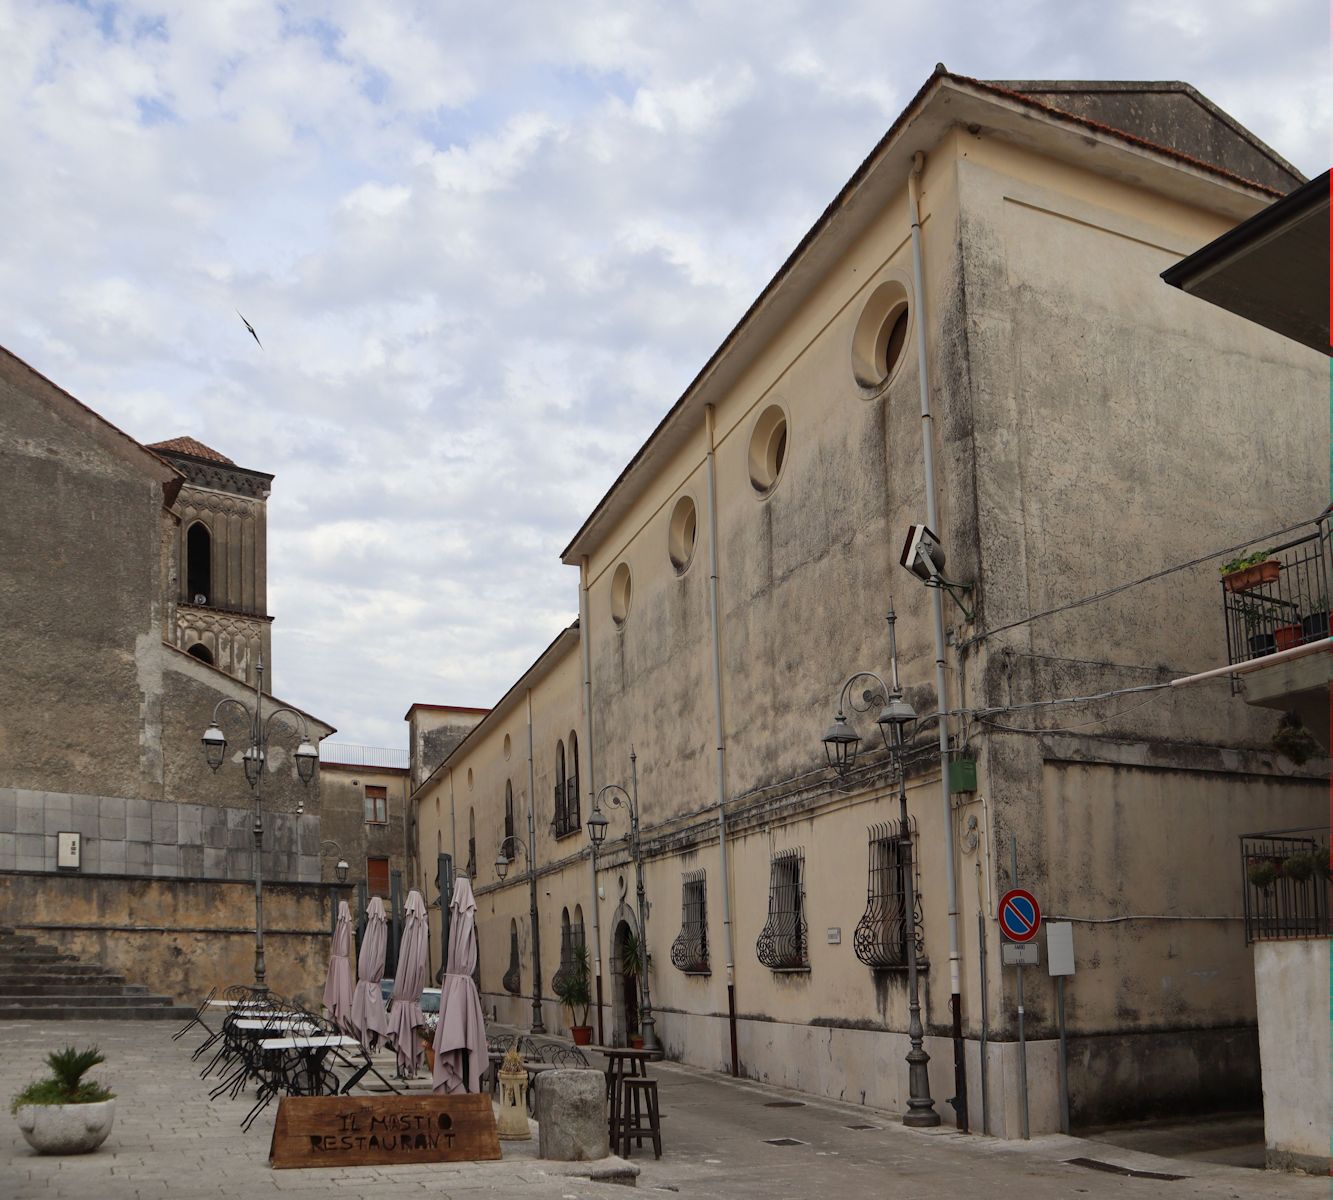 ehemaliges Priesterseminar neben der Kathedrale in Policastro Bussentino